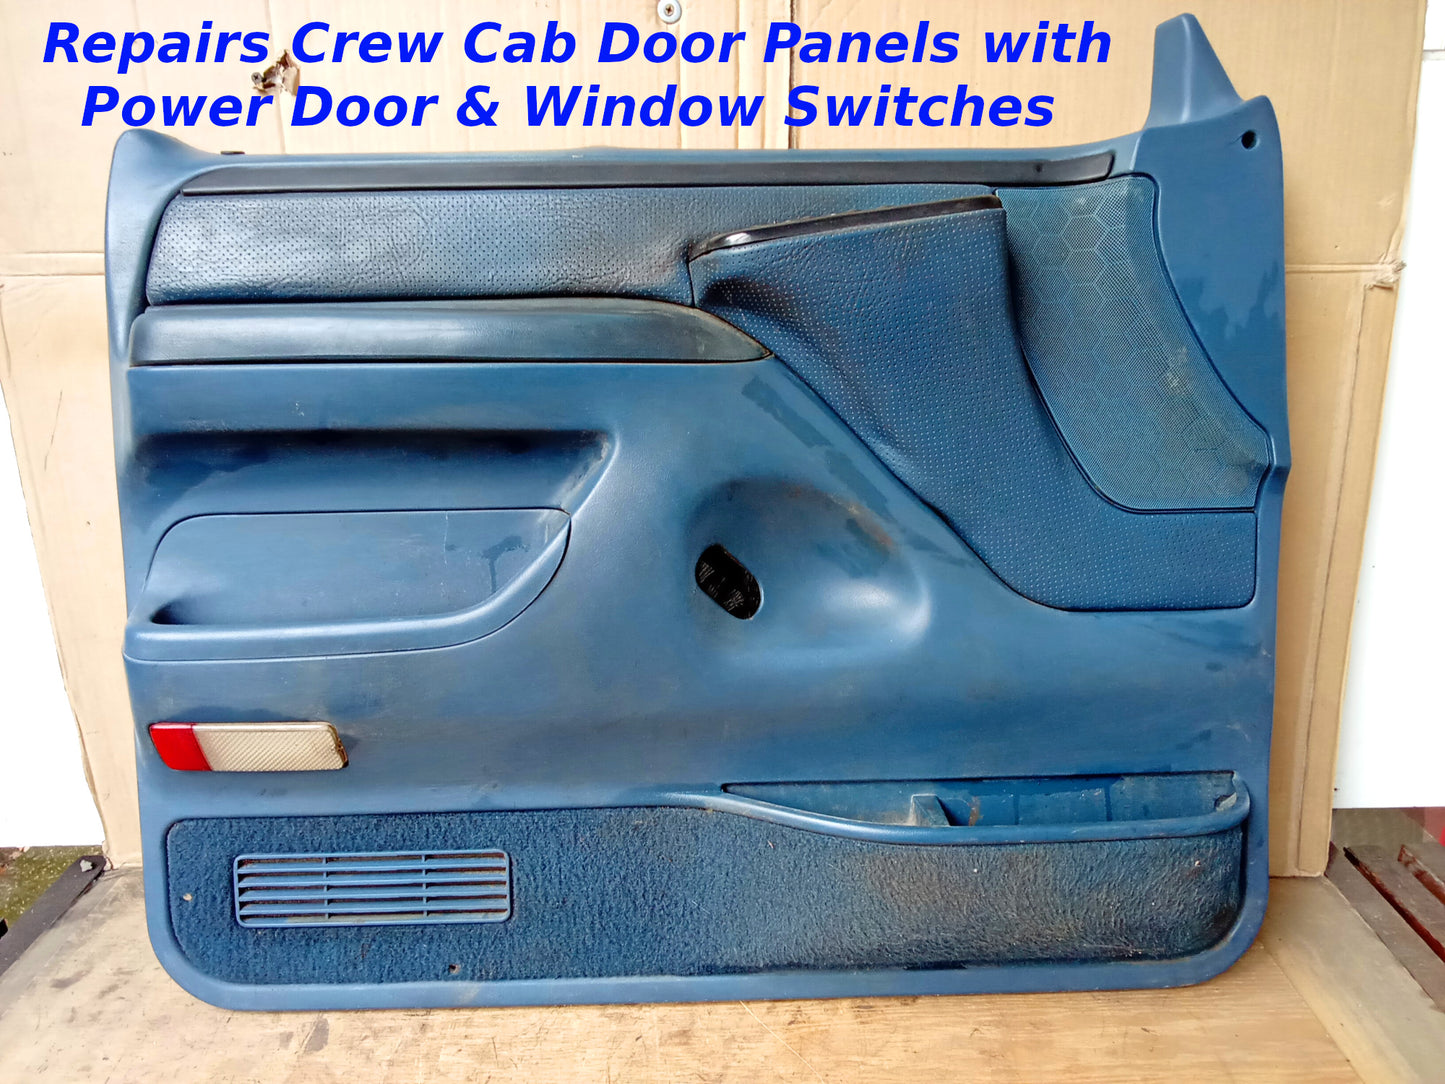 Crew Cab Deluxe Power Door Panel Repair Brackets - OBS 1992-1997 Bronco F150 F250 F350